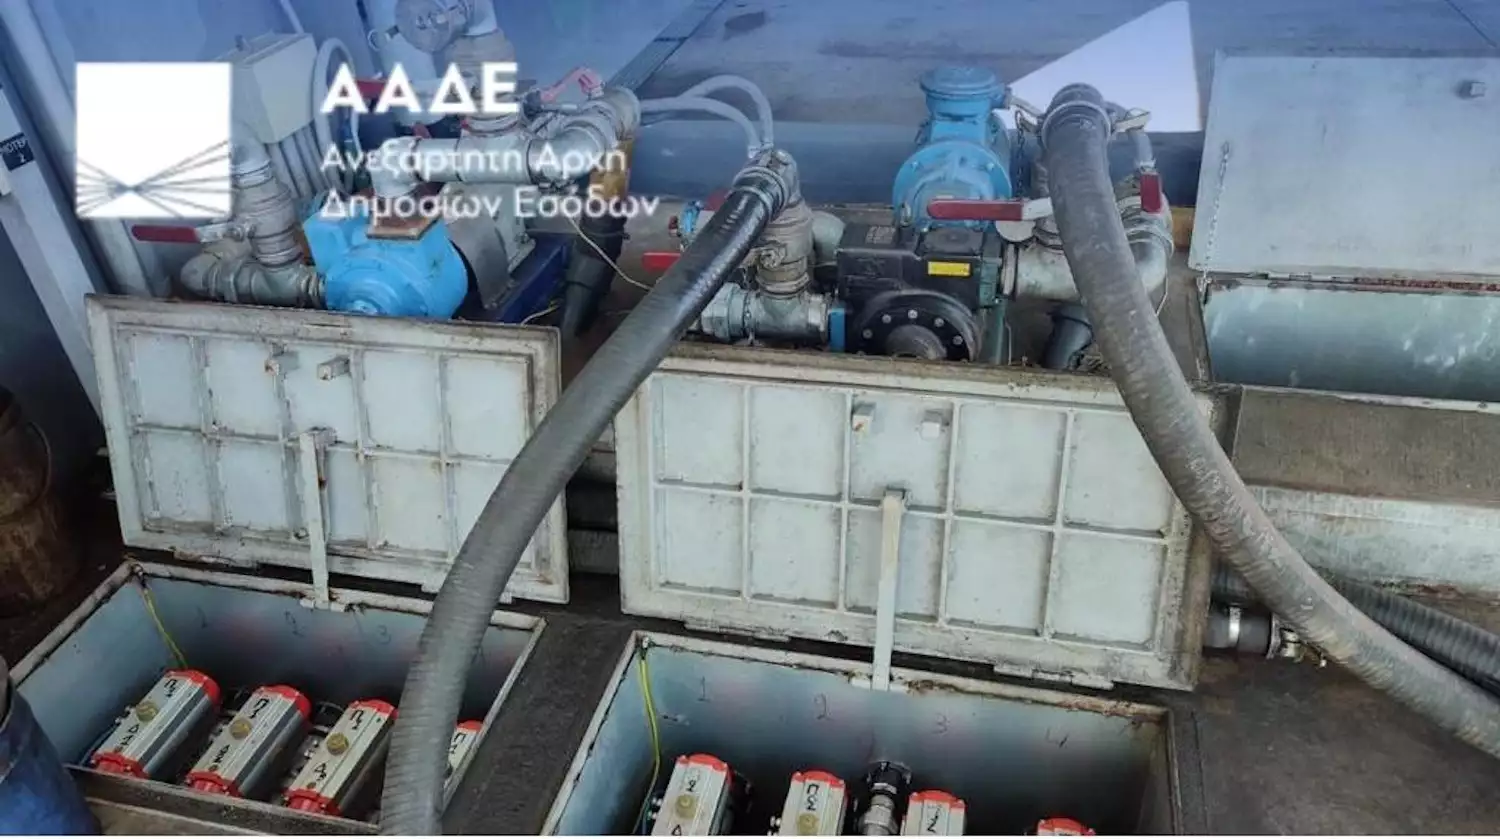 ΑΑΔΕ: Κατασχέθηκαν χιλιάδες λίτρα προϊόντων για νοθεία καυσίμων σε Πειραιά, Ροδόπη και διόδια Ιάσμου - ΦΩΤΟ